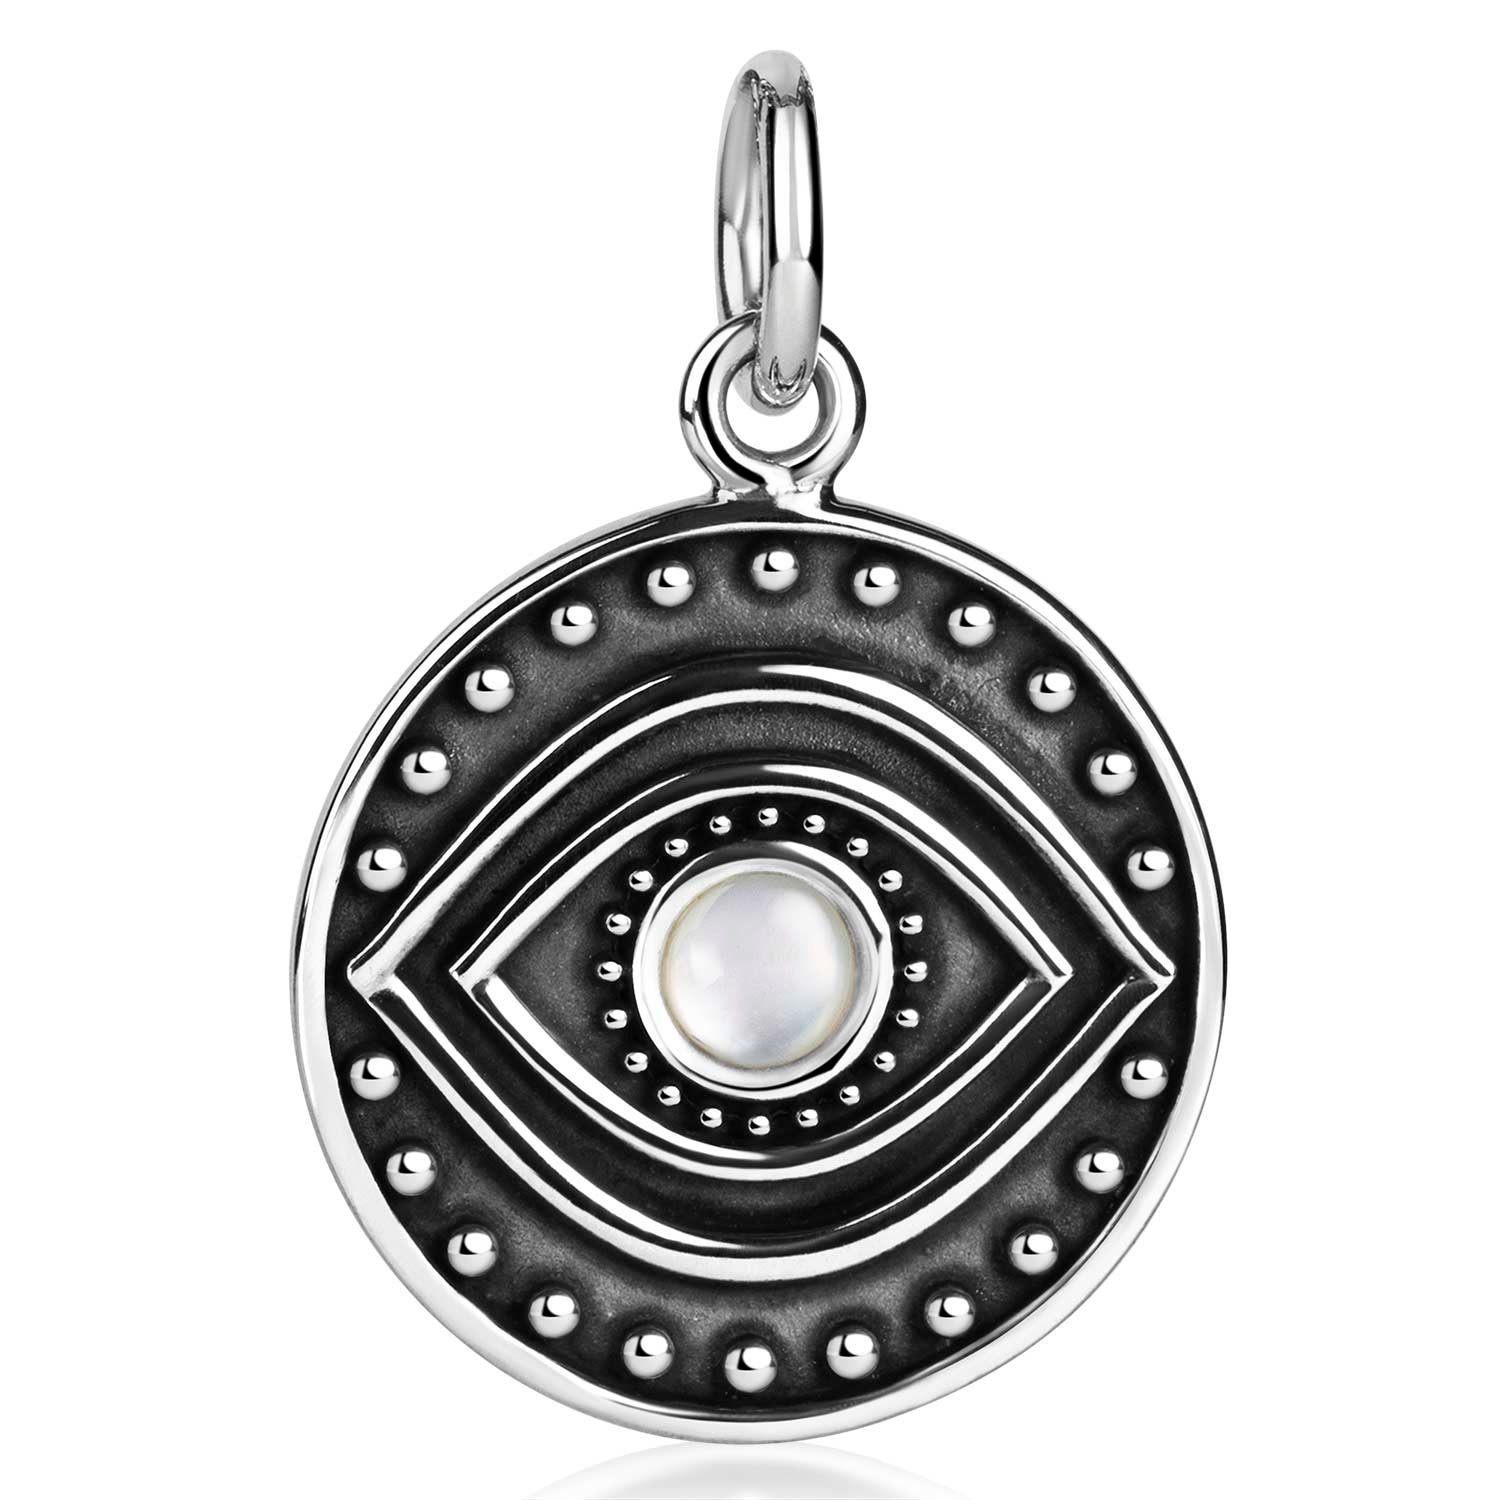 Materia Runder Anhänger Auge / Evil Eye Muschel Perlmutt Weiß KA-502, 925 Sterling Silber, antik oxidiert | Kettenanhänger